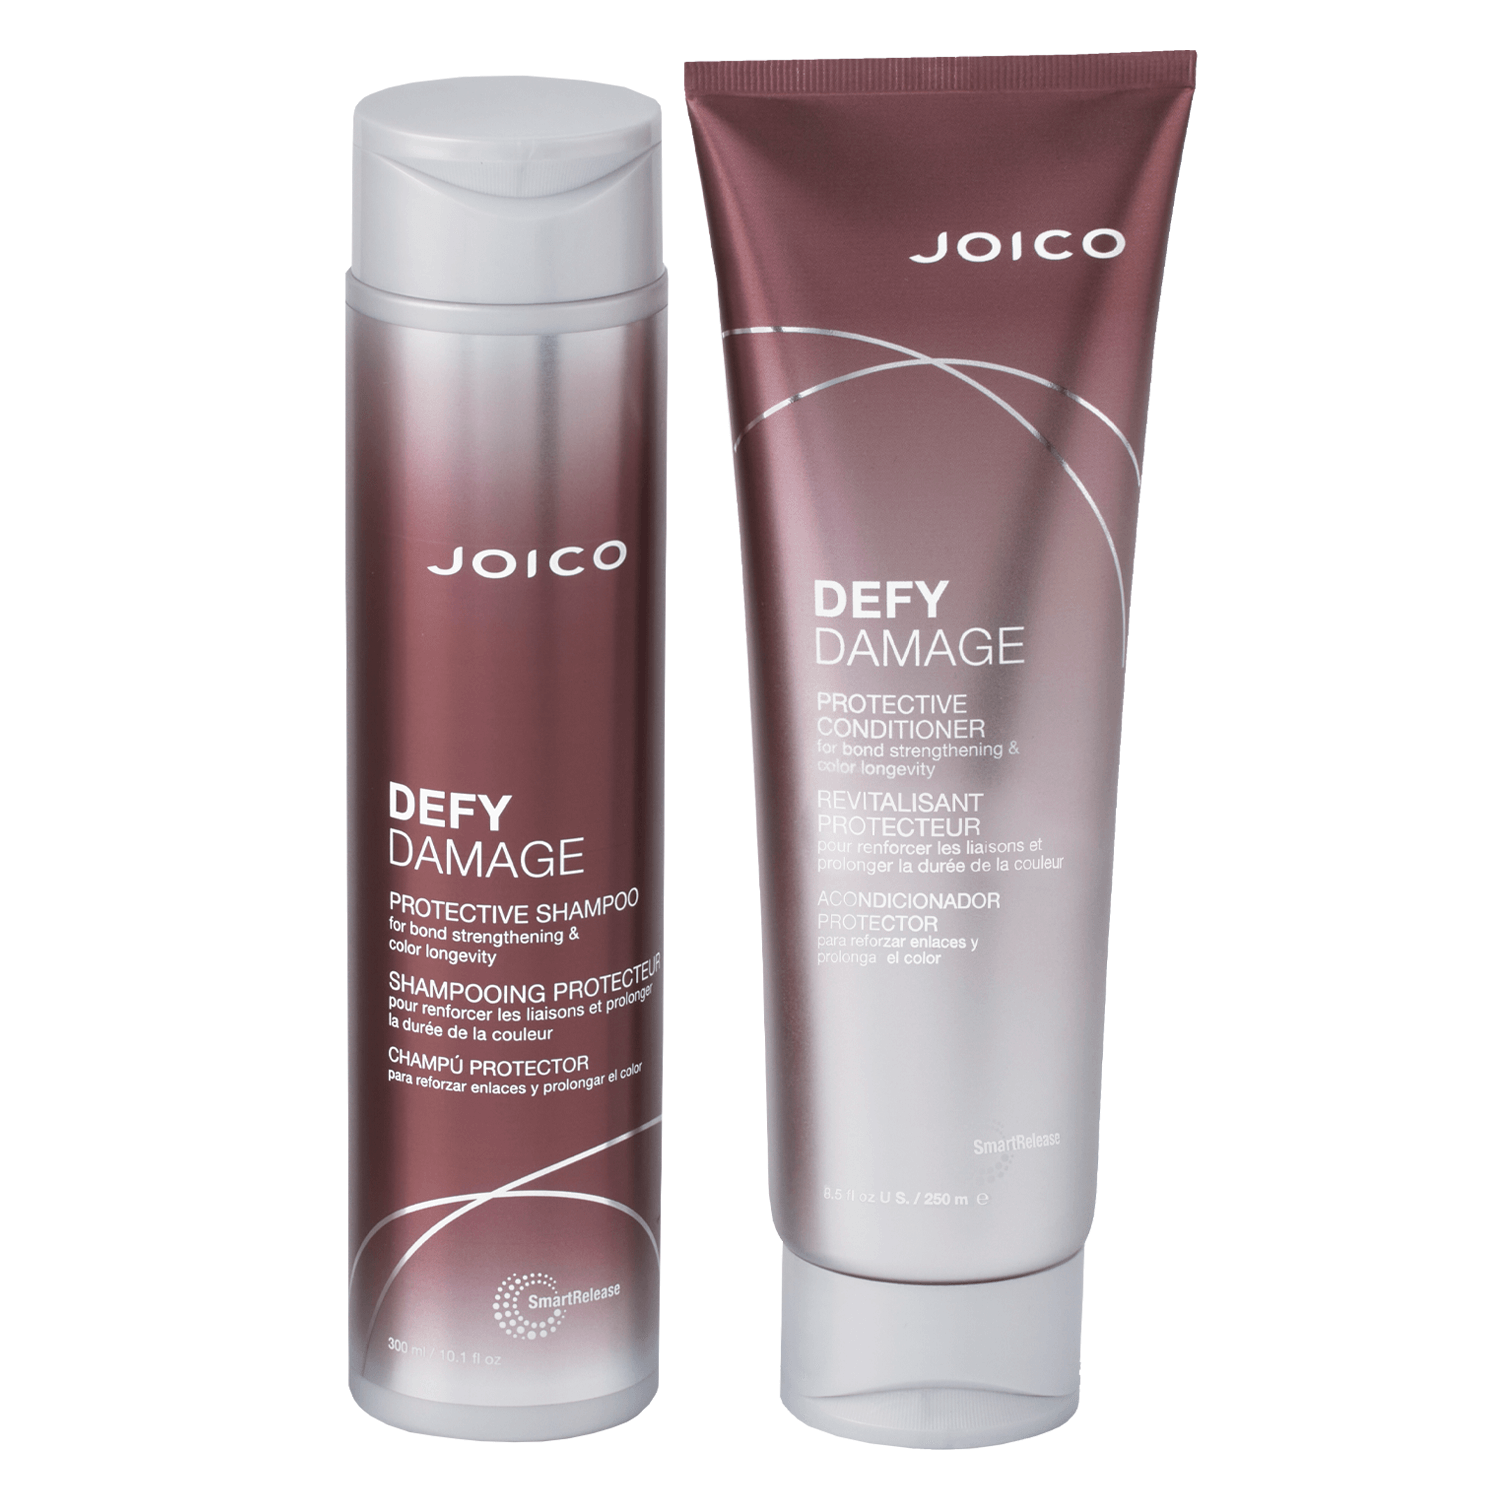 Produktbild von Defy Damage - Protective Shampoo & Conditioner Duo Set